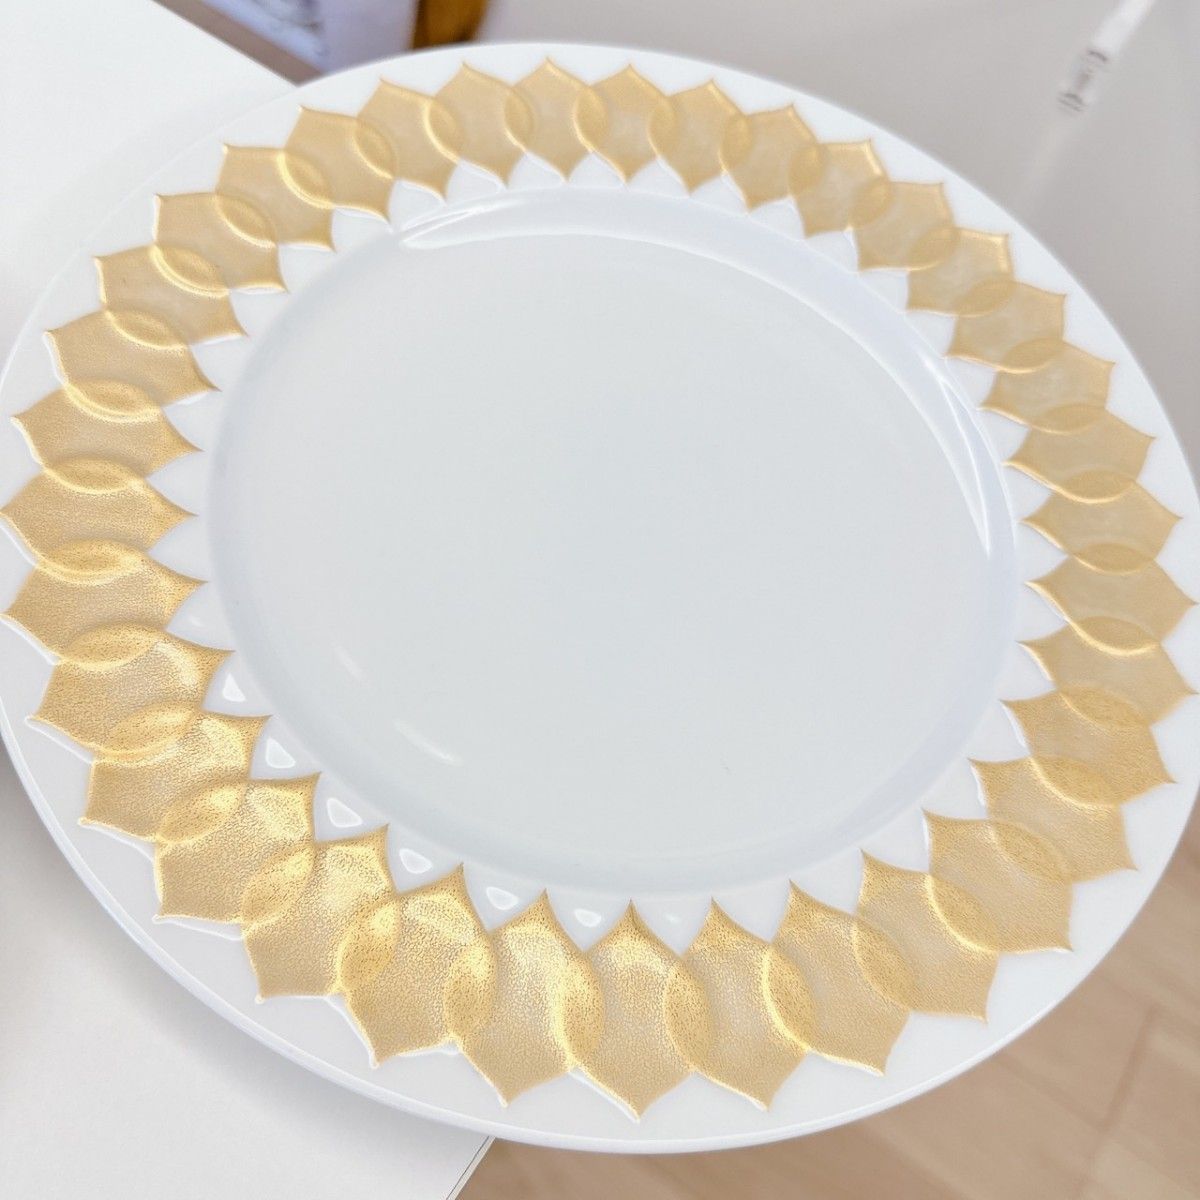 ローゼンタール ロータス 大皿 メイン皿 パーティー皿 ゴールド 金彩 18 アンティーク ヴィンテージ ディナープレート